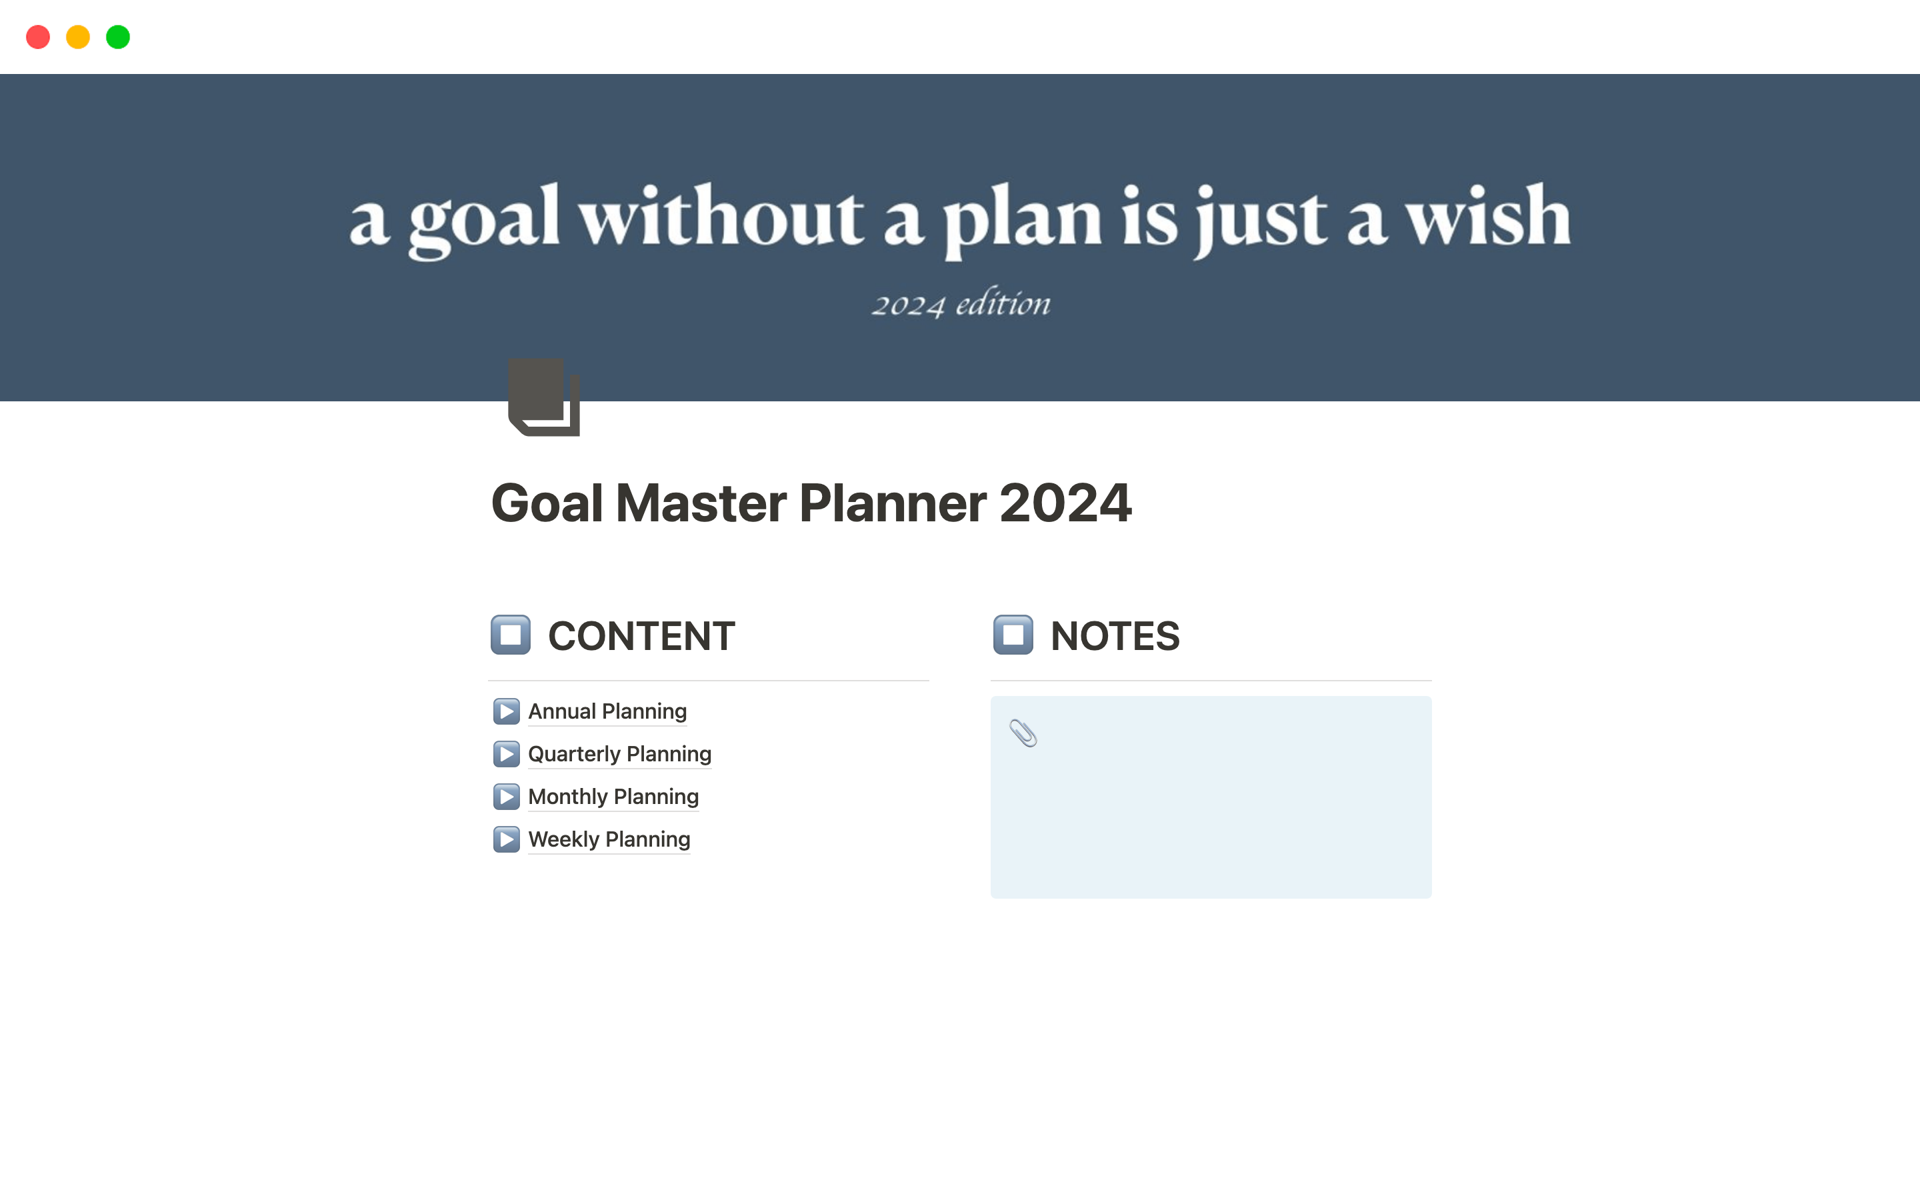 Uma prévia do modelo para Goal Master Planner 2024